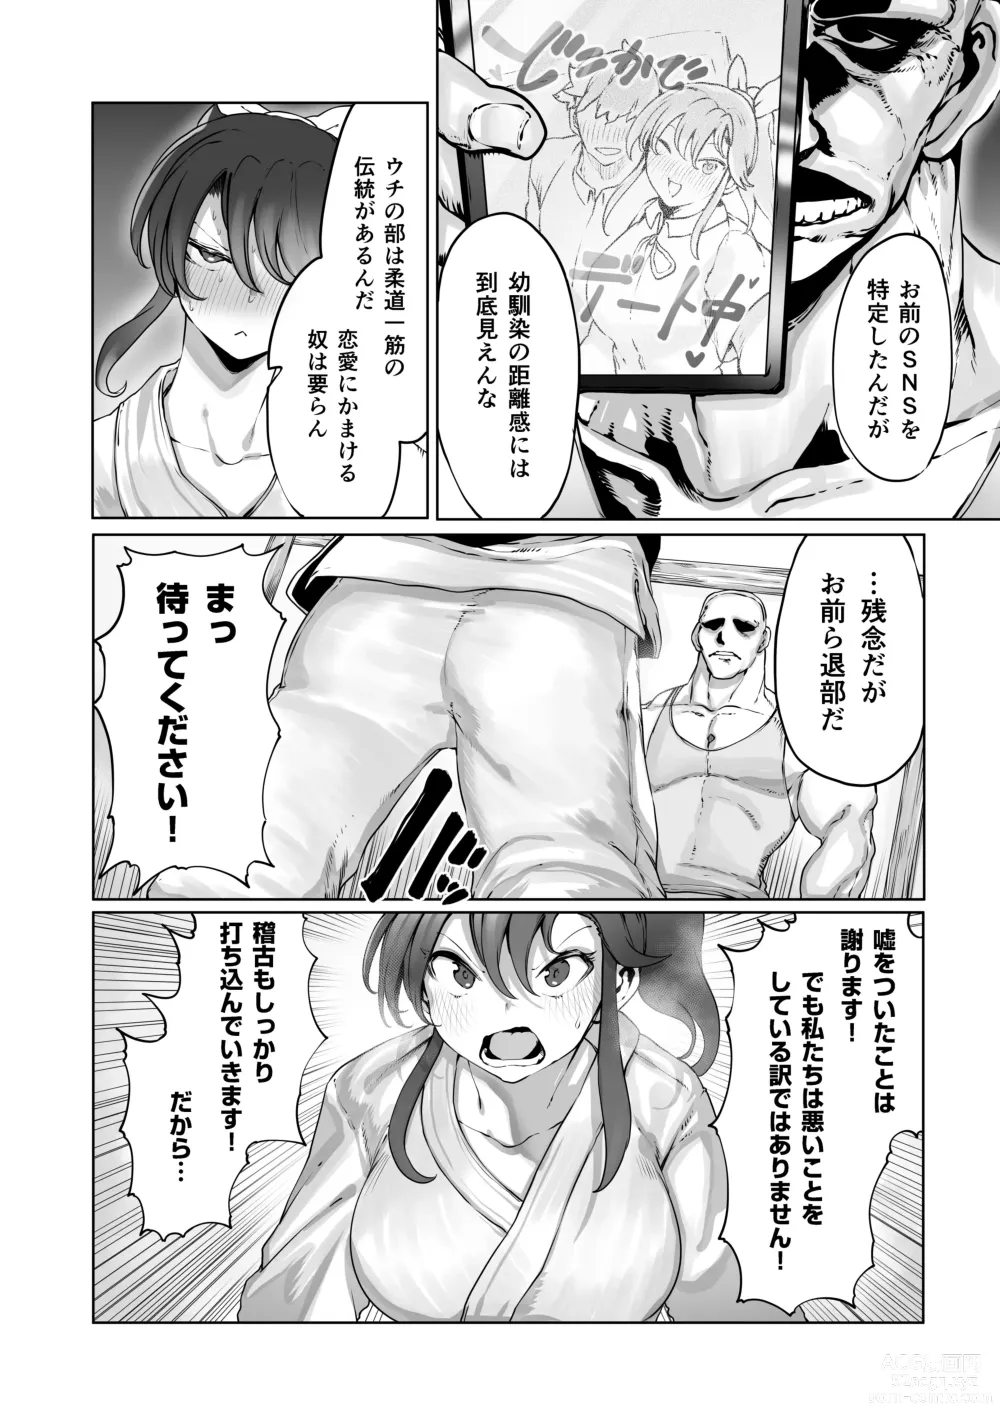 Page 9 of doujinshi Yozora no Tsuki ga Ochiru made